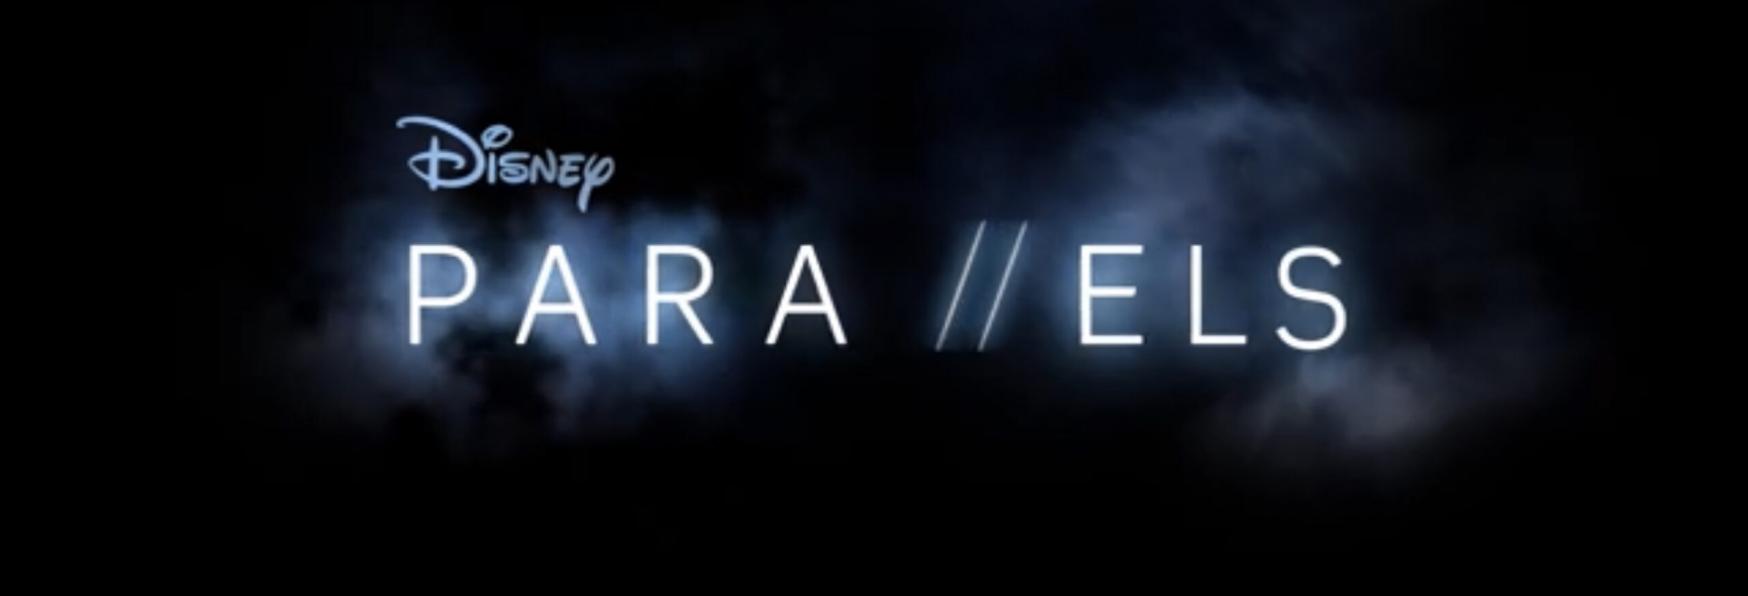 Parallels: il Trailer e la Data di Uscita della nuova Serie TV Francese di Disney+